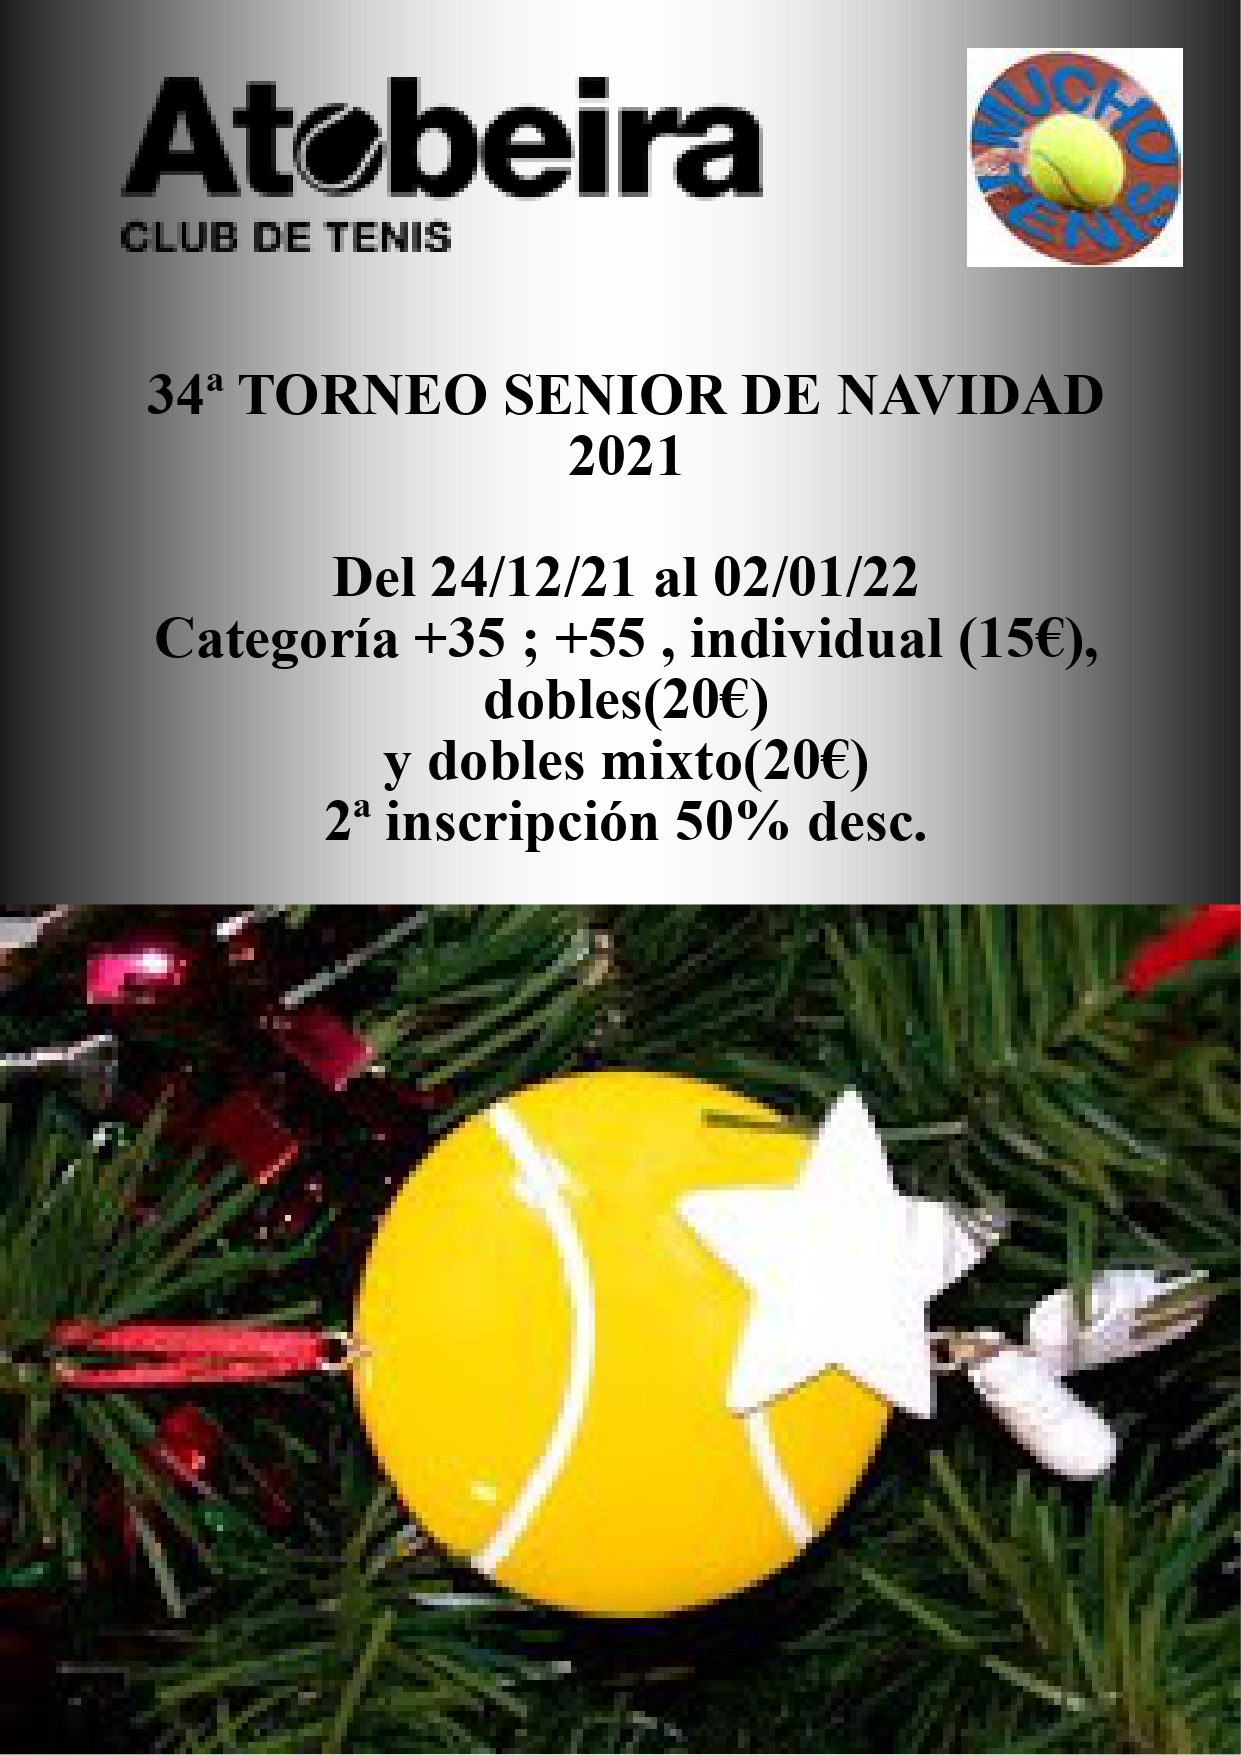 34ª edición Torneo Senior de Navidad 2021 A Tobeira